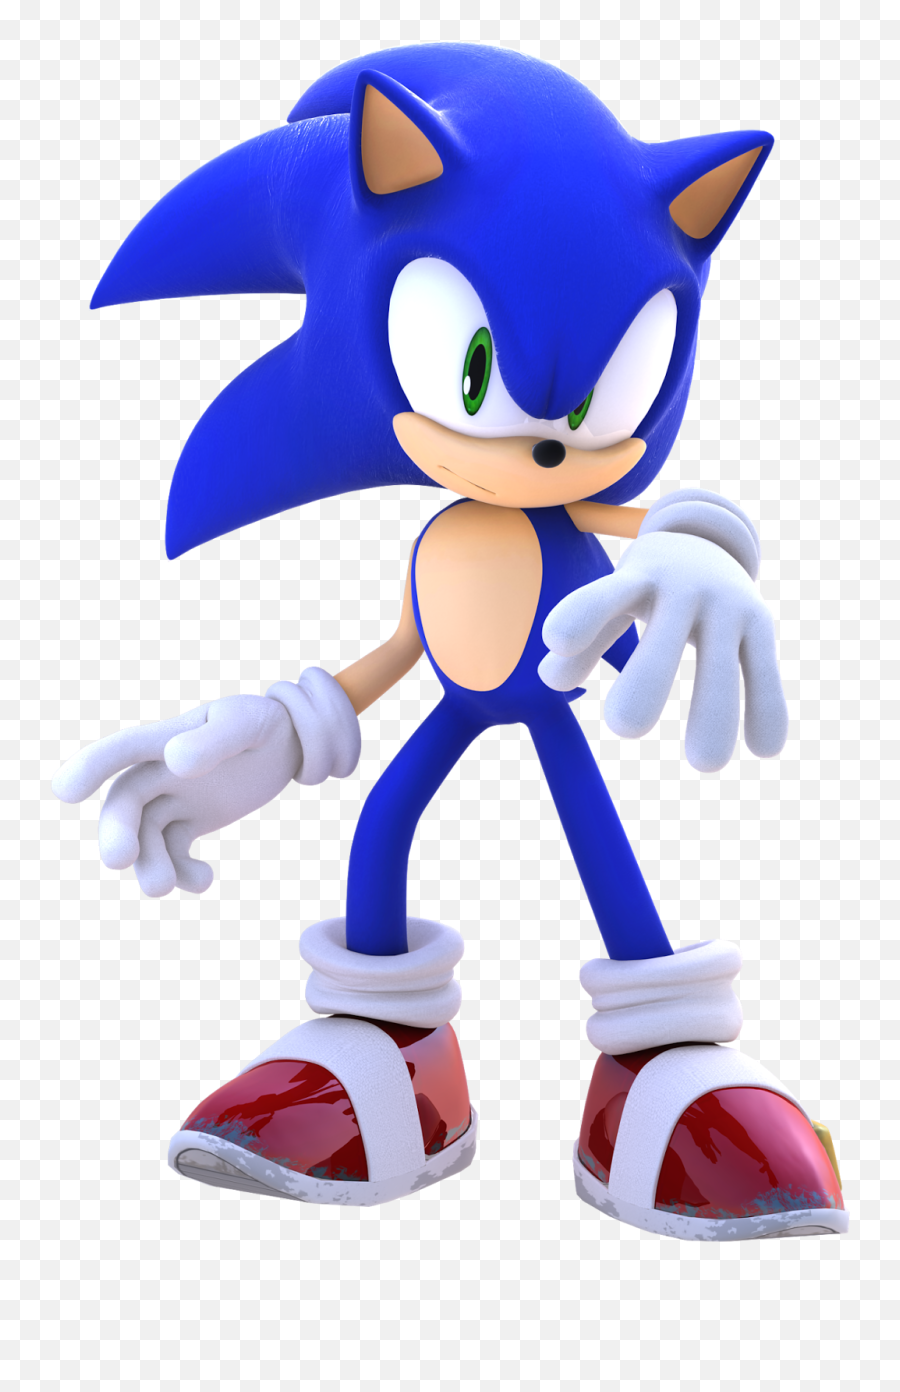 Download Sonic The Hedgehog Png Pack - Transparent Png Image Sonic The Hedgehog Png Emoji,Sonic The Hedgehog Png